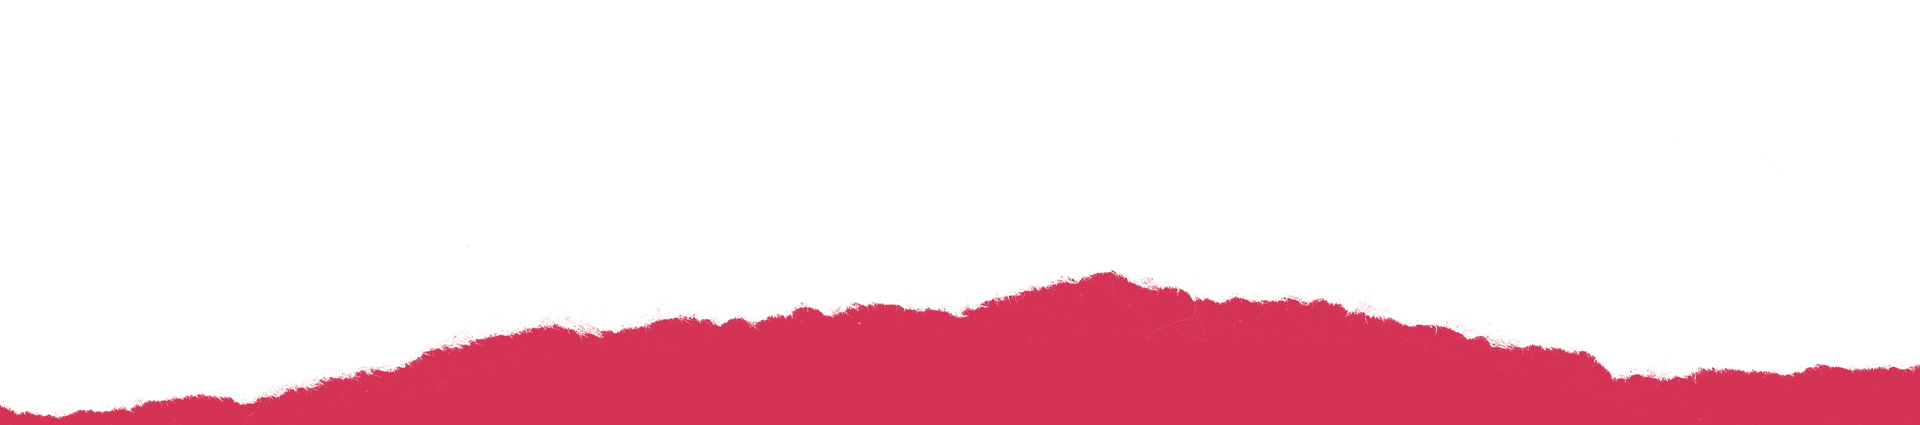 SamsungxAO